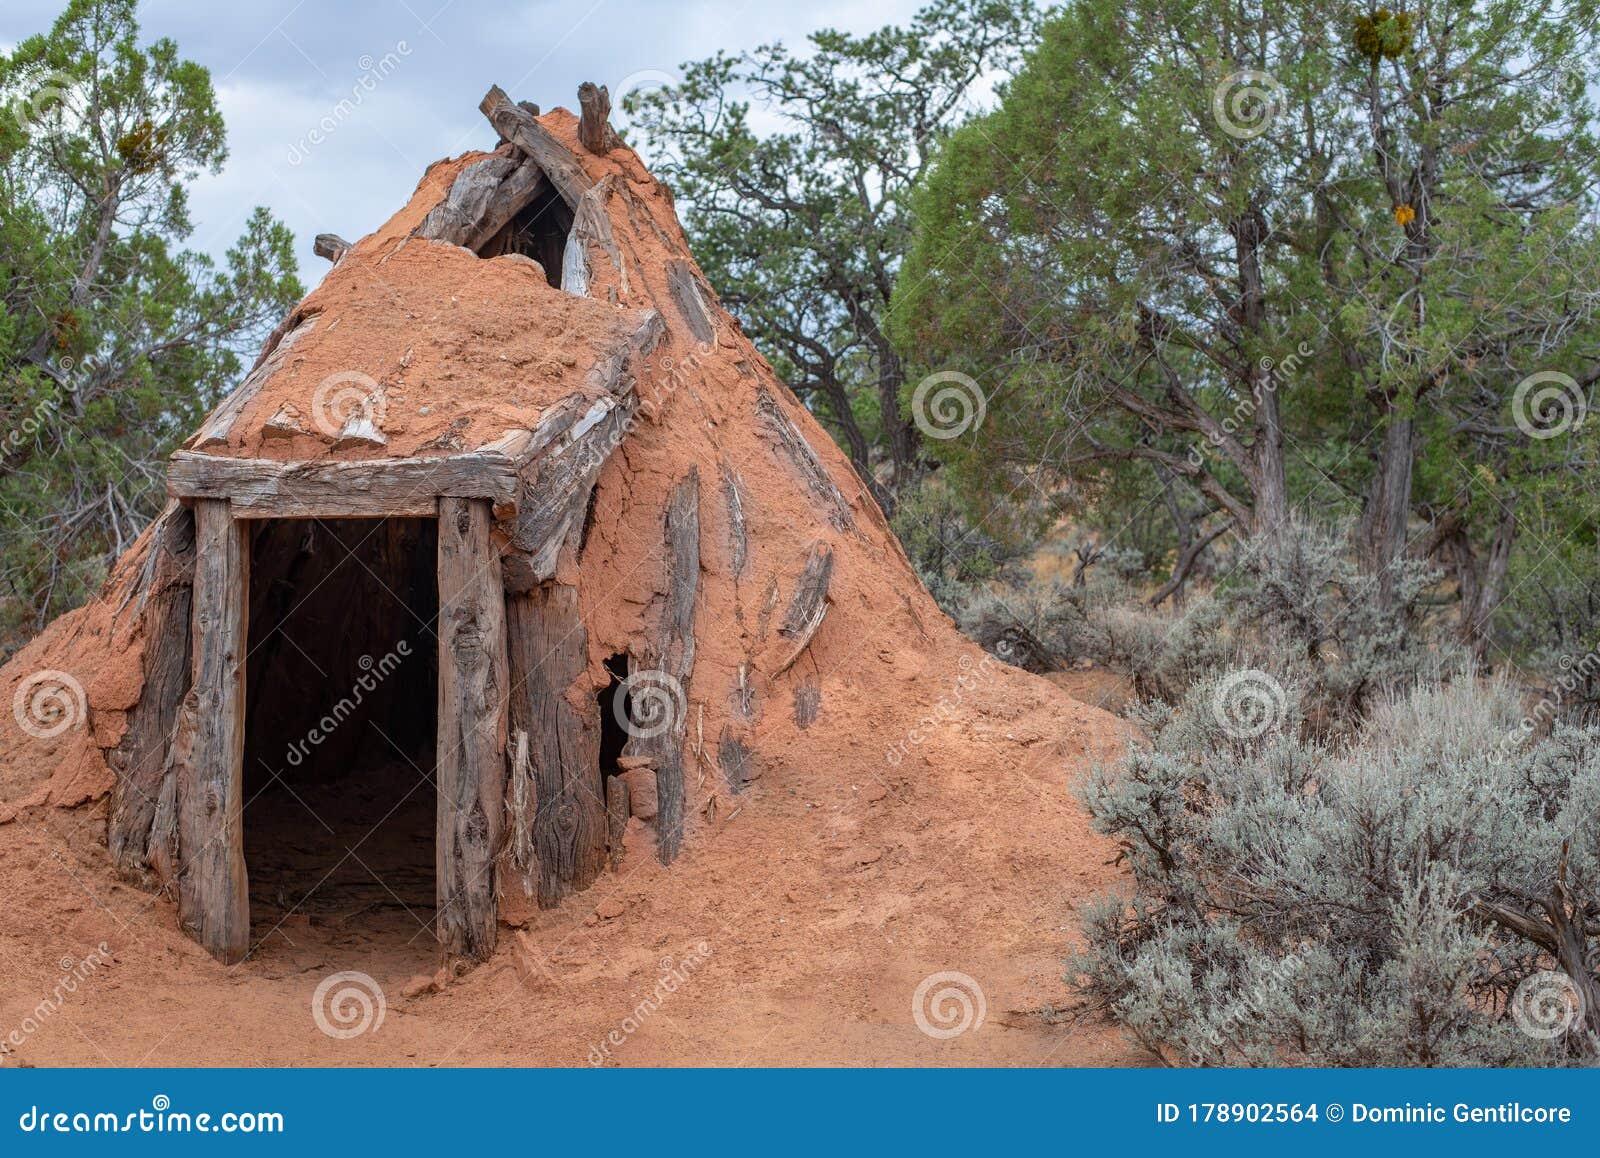 Twisted Uplifted Mount Bank Hogan Mud Hut House stock photo. Image of earth, kayenta - 178902564